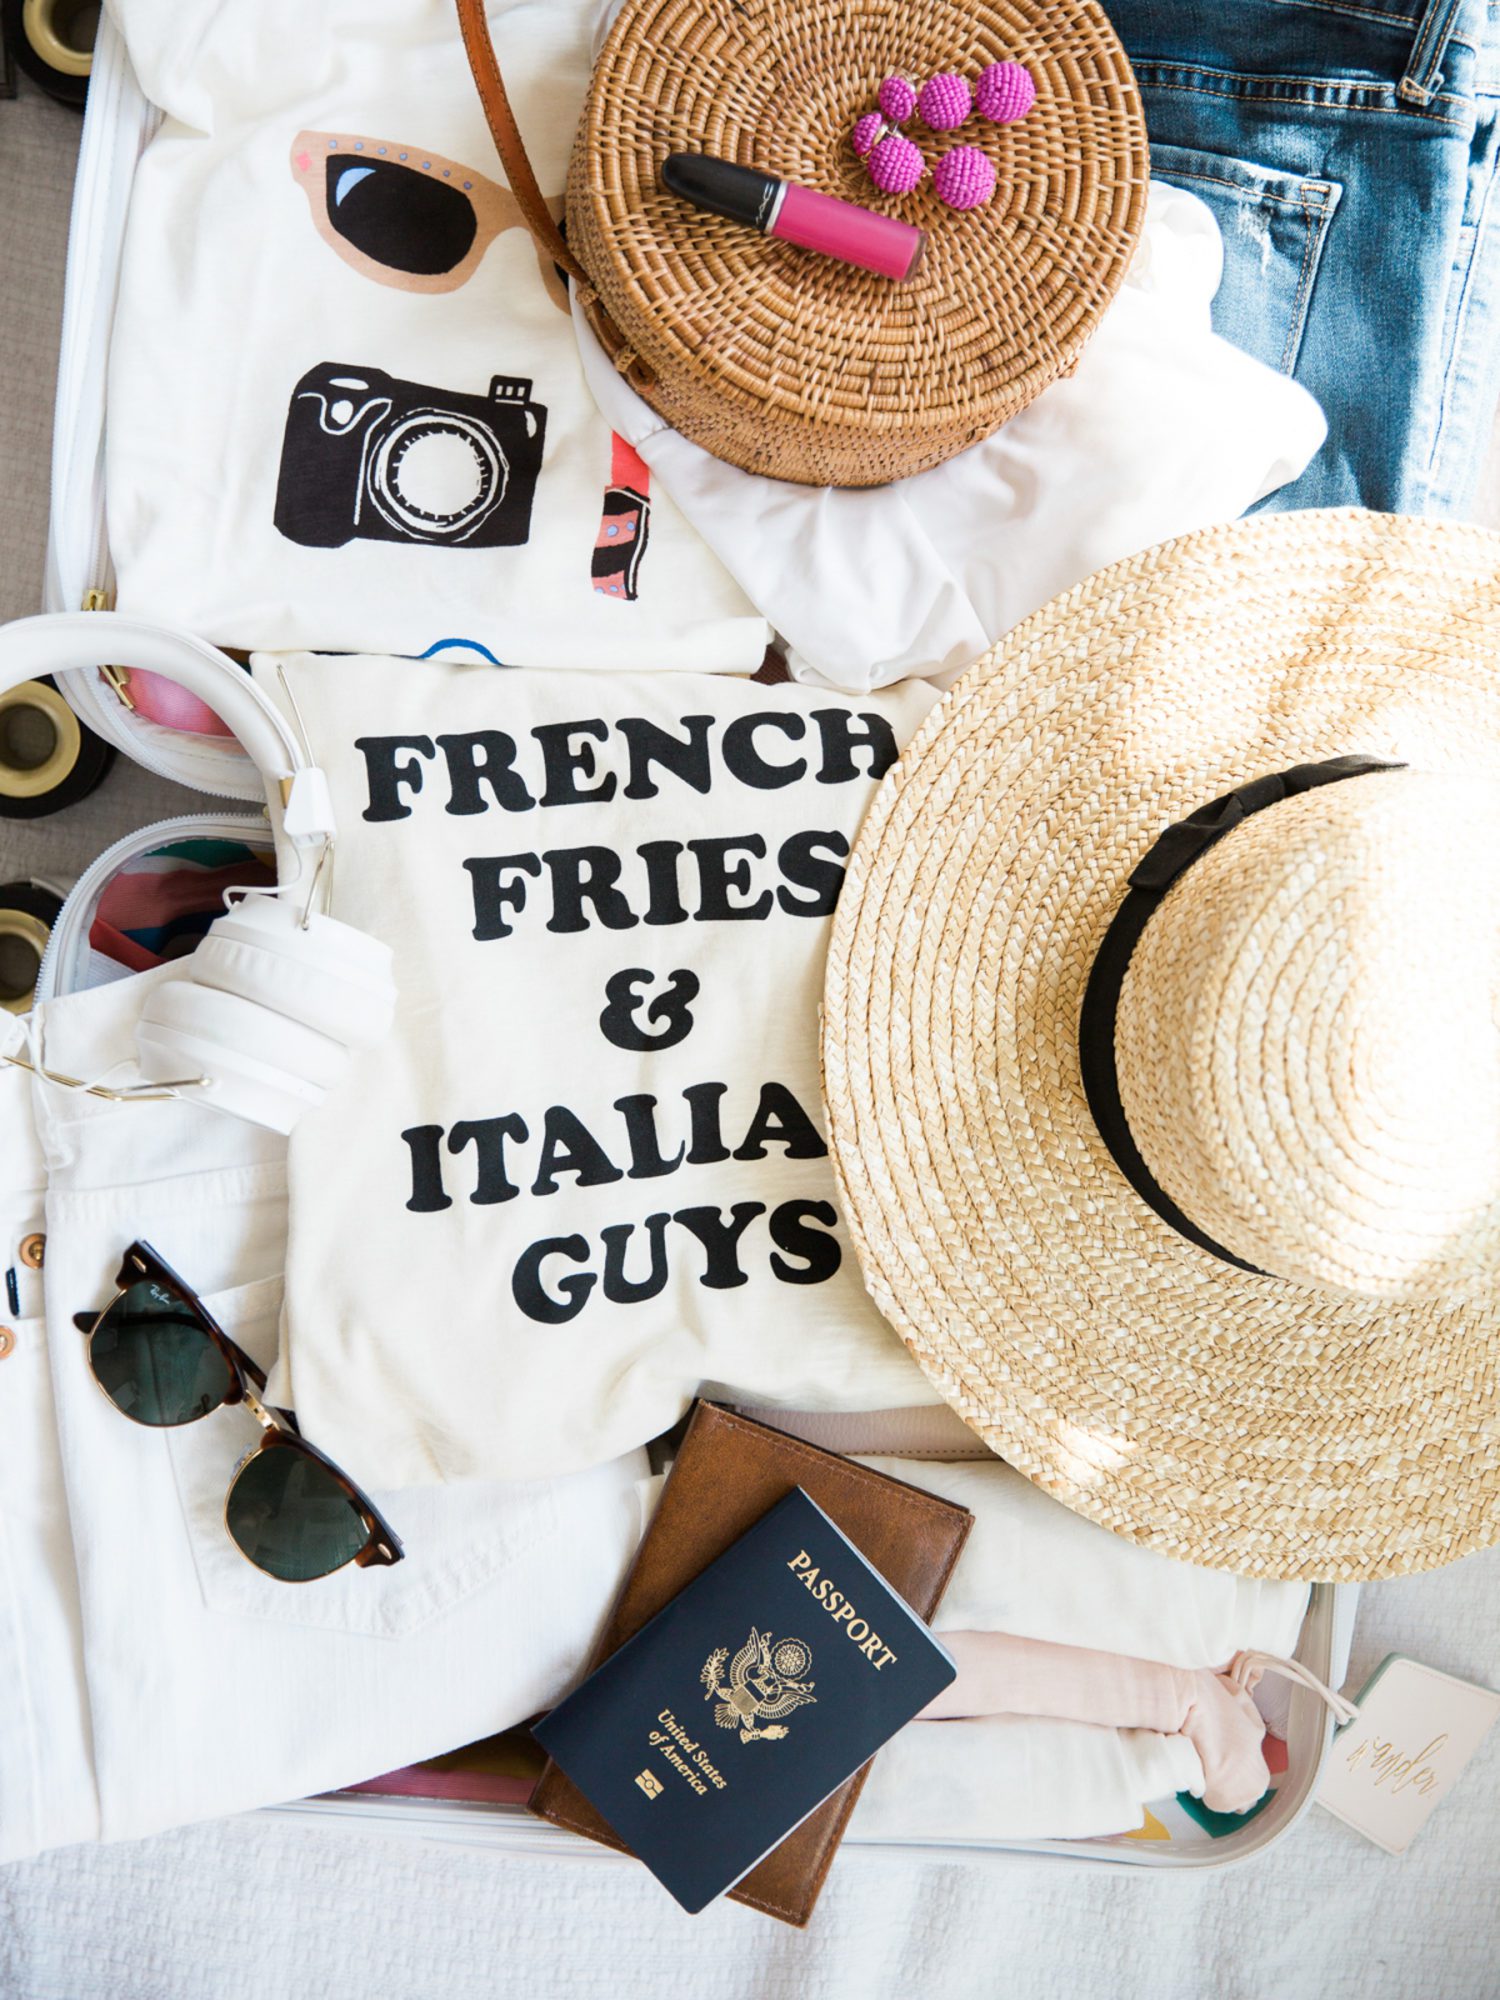 Sunglasses, sun hat, passport, and shirt